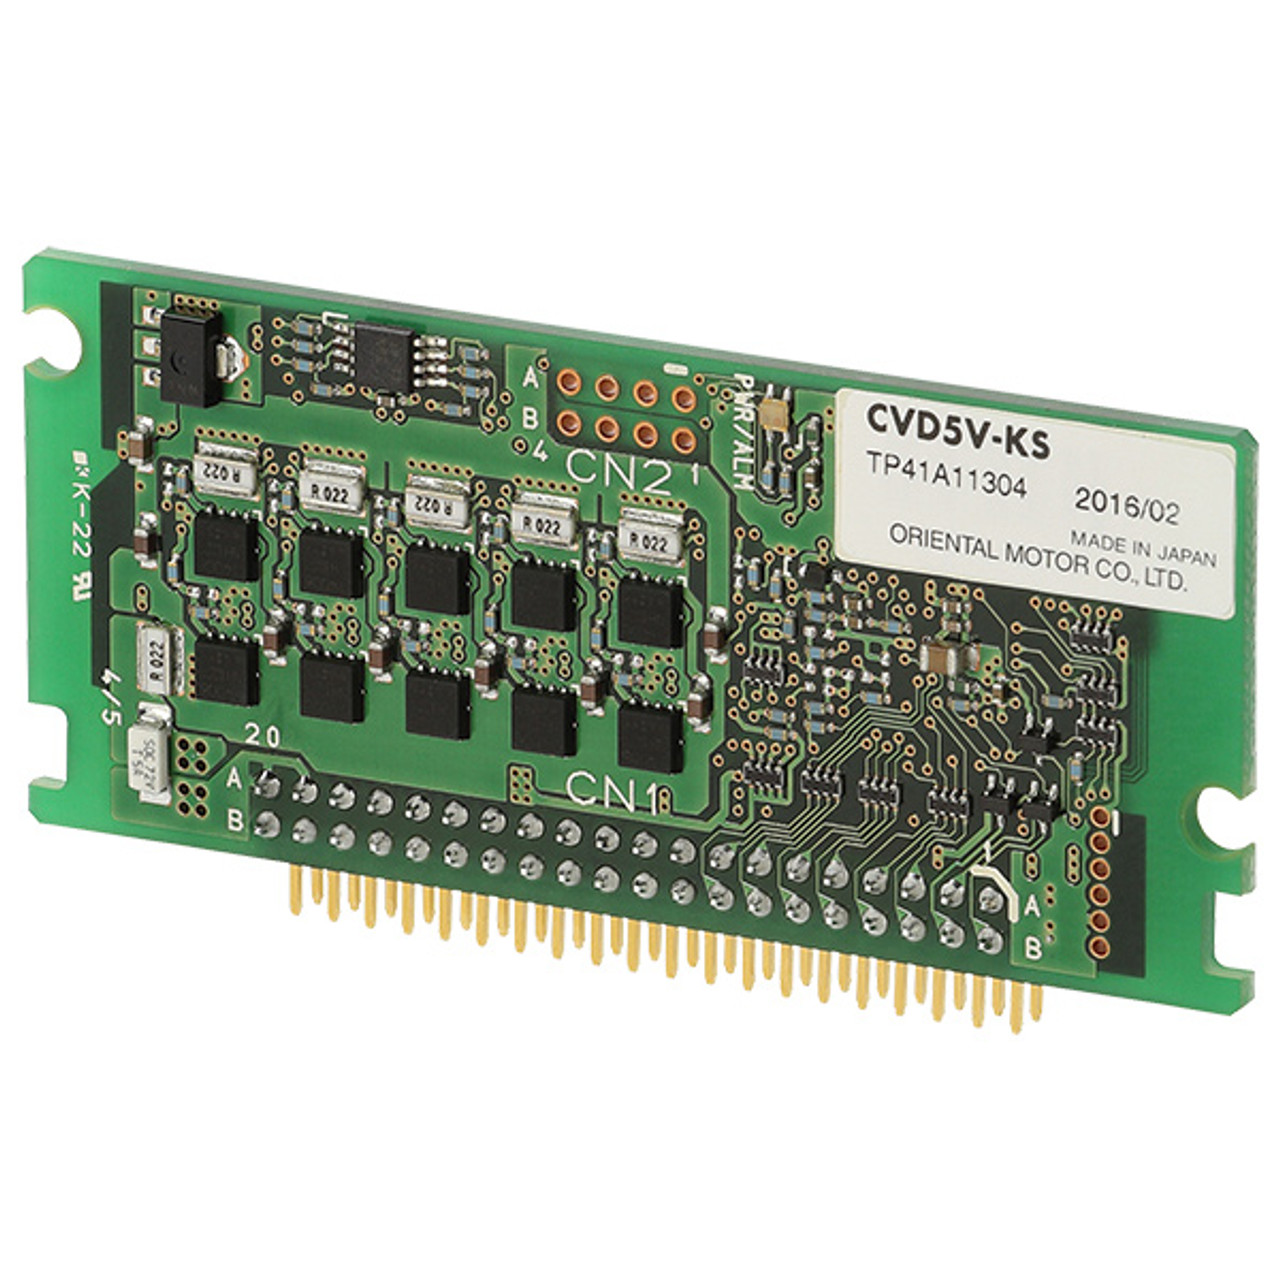 CVD2V-K - Product Image